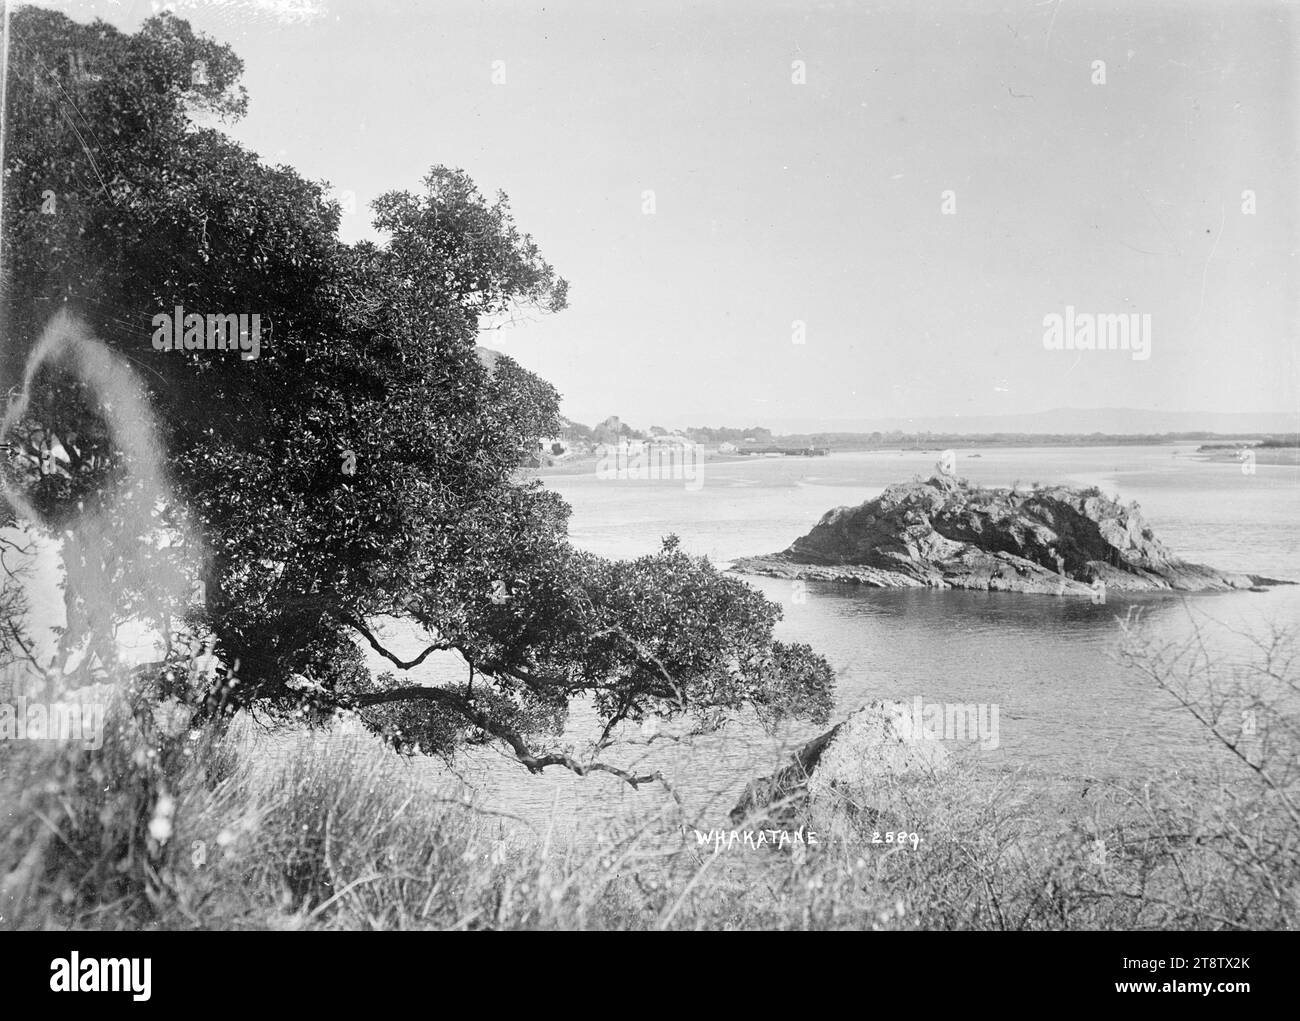 Whakatane Township, Whakatane Township e colline rocciose dietro, fotografate intorno agli anni '1910 Guarda su cumuli di legname su una costa, verso la città. I cartelli sugli edifici pubblicizzano: Alimentari, M Ramson e la Union Bank of Australia Foto Stock